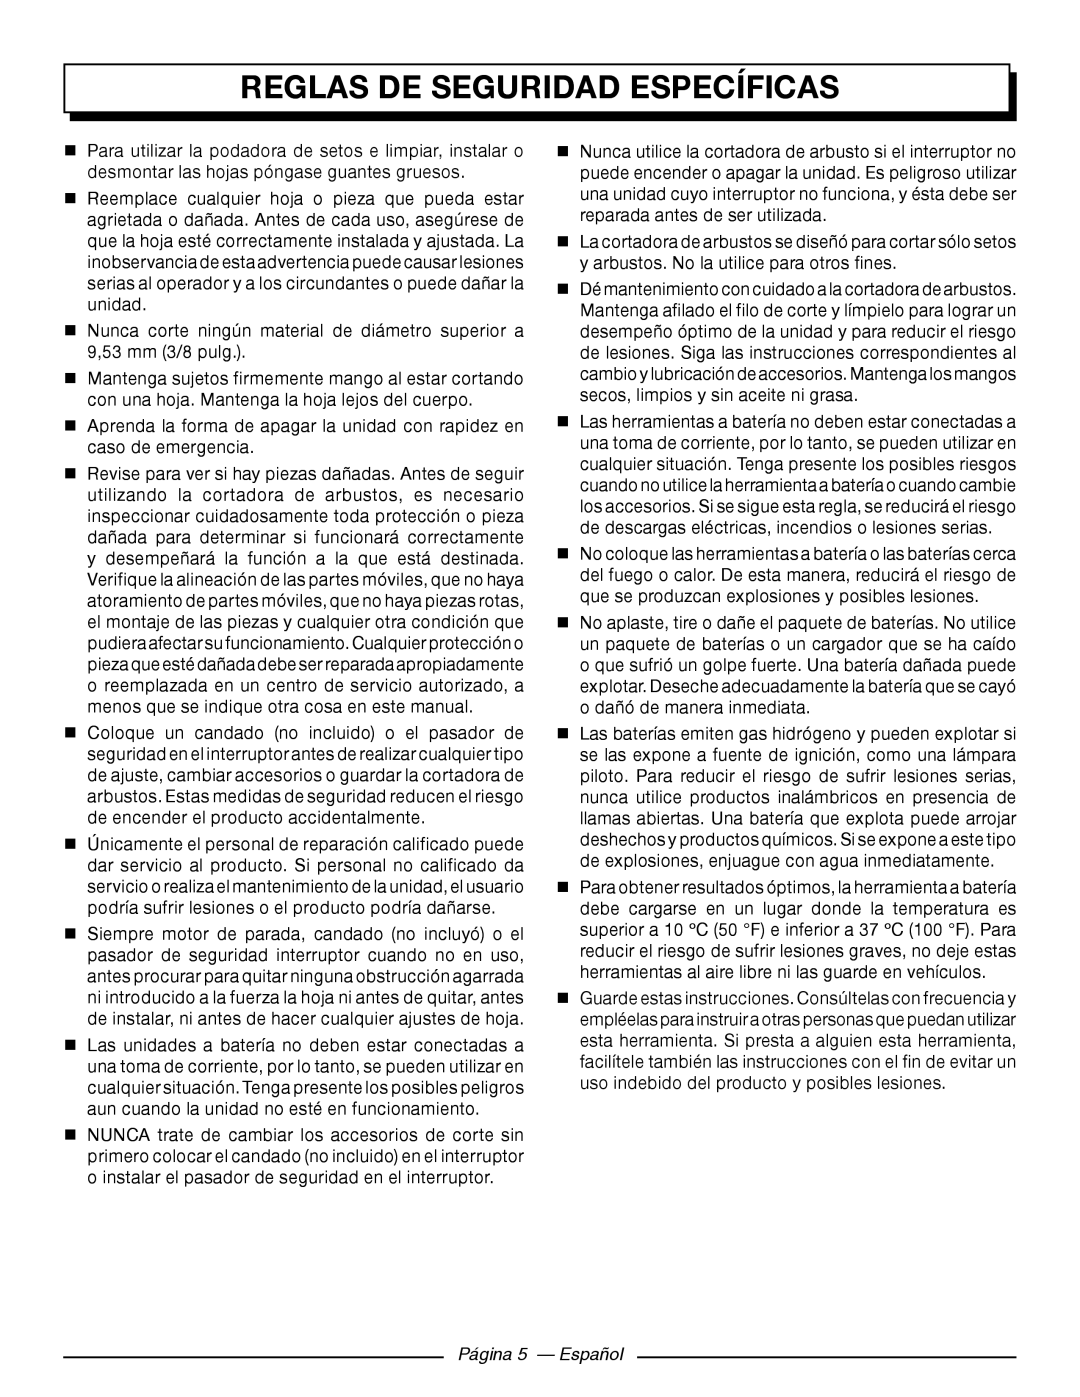 Homelite UT44171 manuel dutilisation Reglas De Seguridad Específicas, Página 5 - Español 